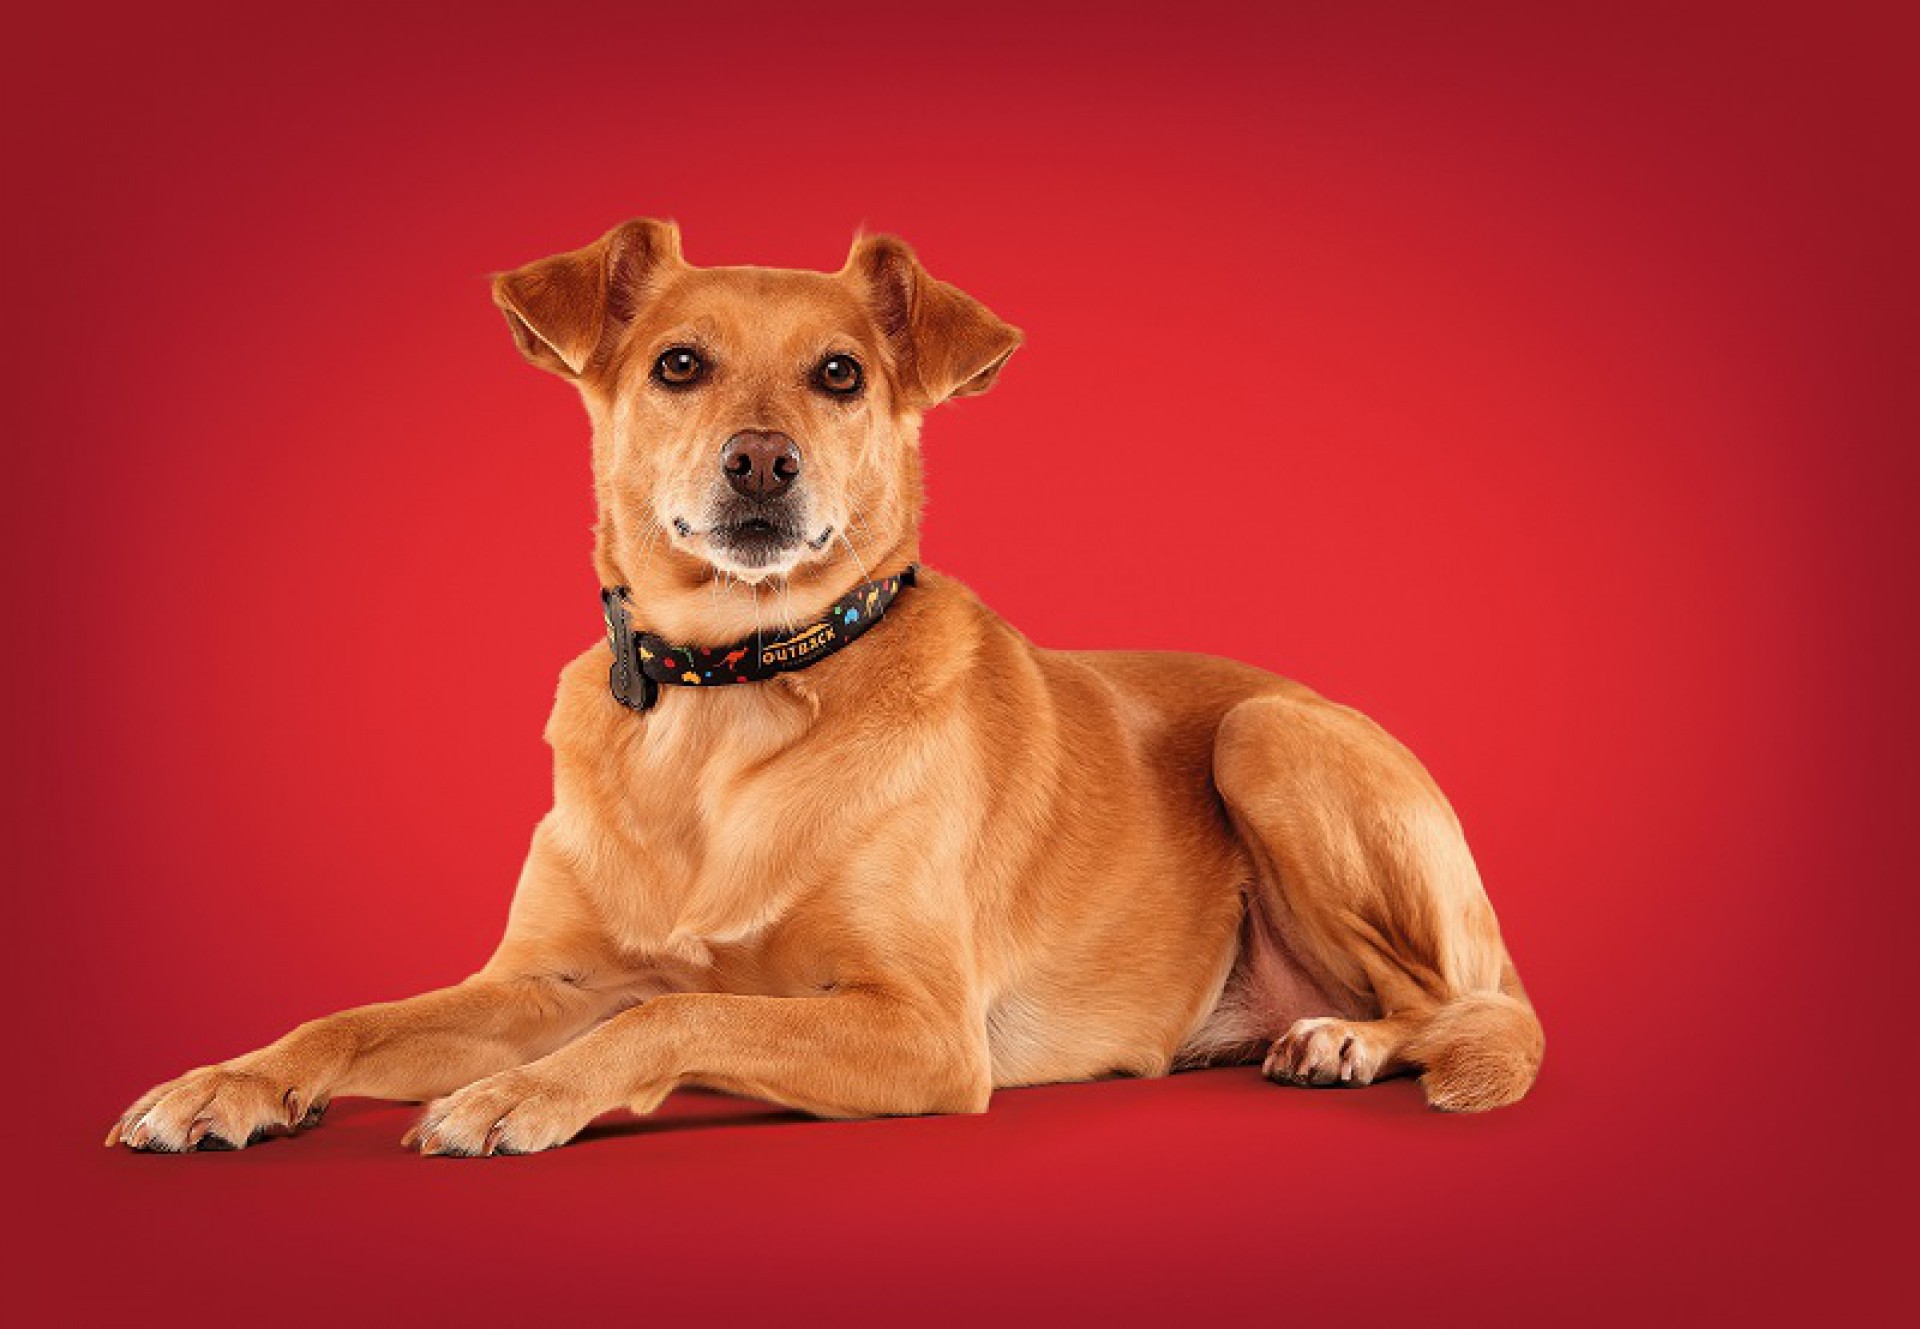 Em parceria com as empresas Petz e MeuAuAu, a marca também incentiva a doação de cães (Foto: Divulgação)